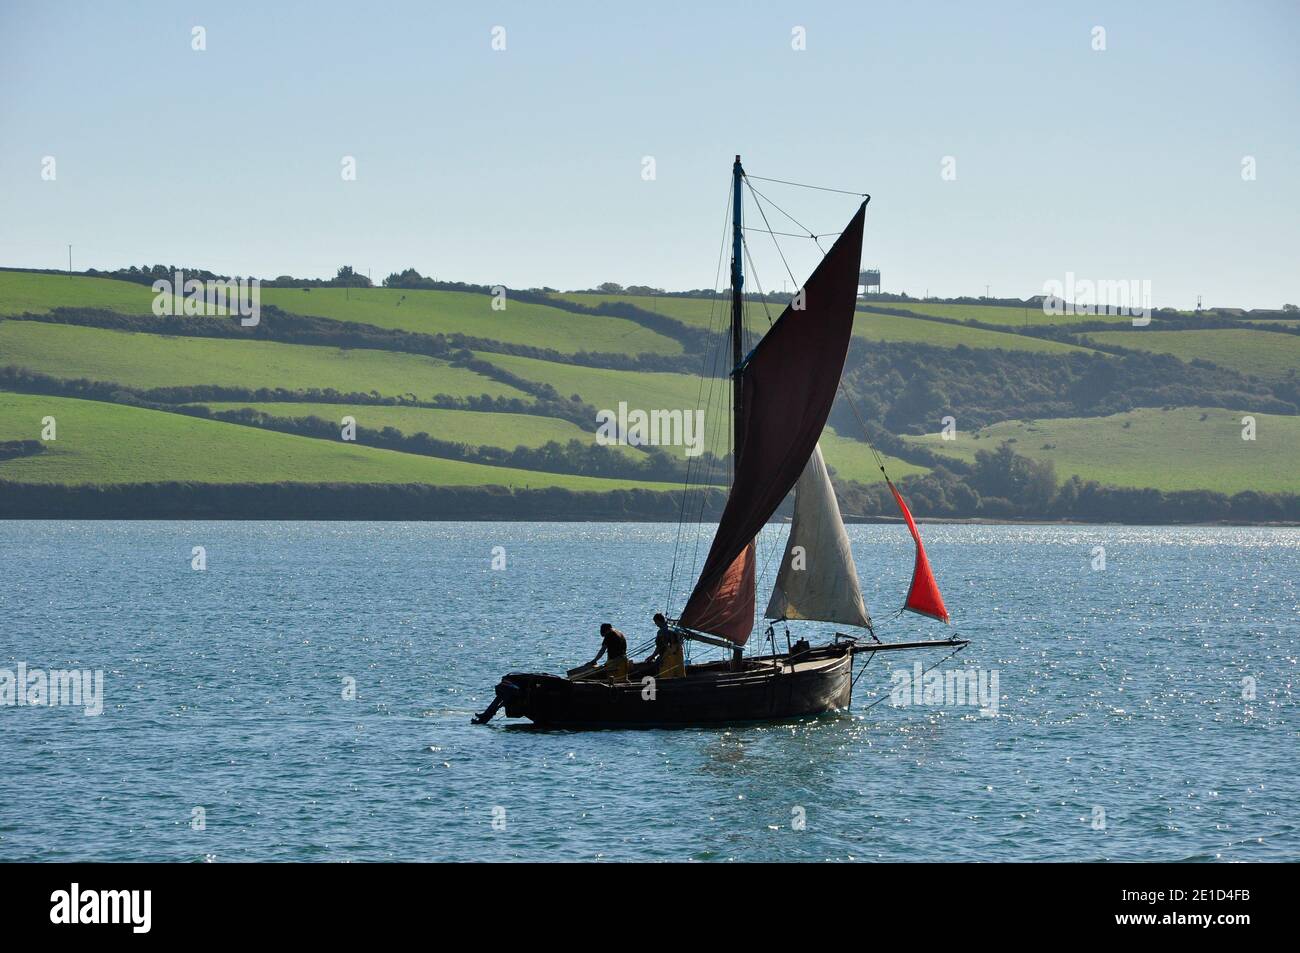 Falmouth Work Boat entwickelt für die Ausbaggerung der einheimischen Austern in den Fal Fluss. Sie haben eine Gaffelschneider Rig und einen langen Kiel Rumpf. Cornwall, England, Großbritannien Stockfoto